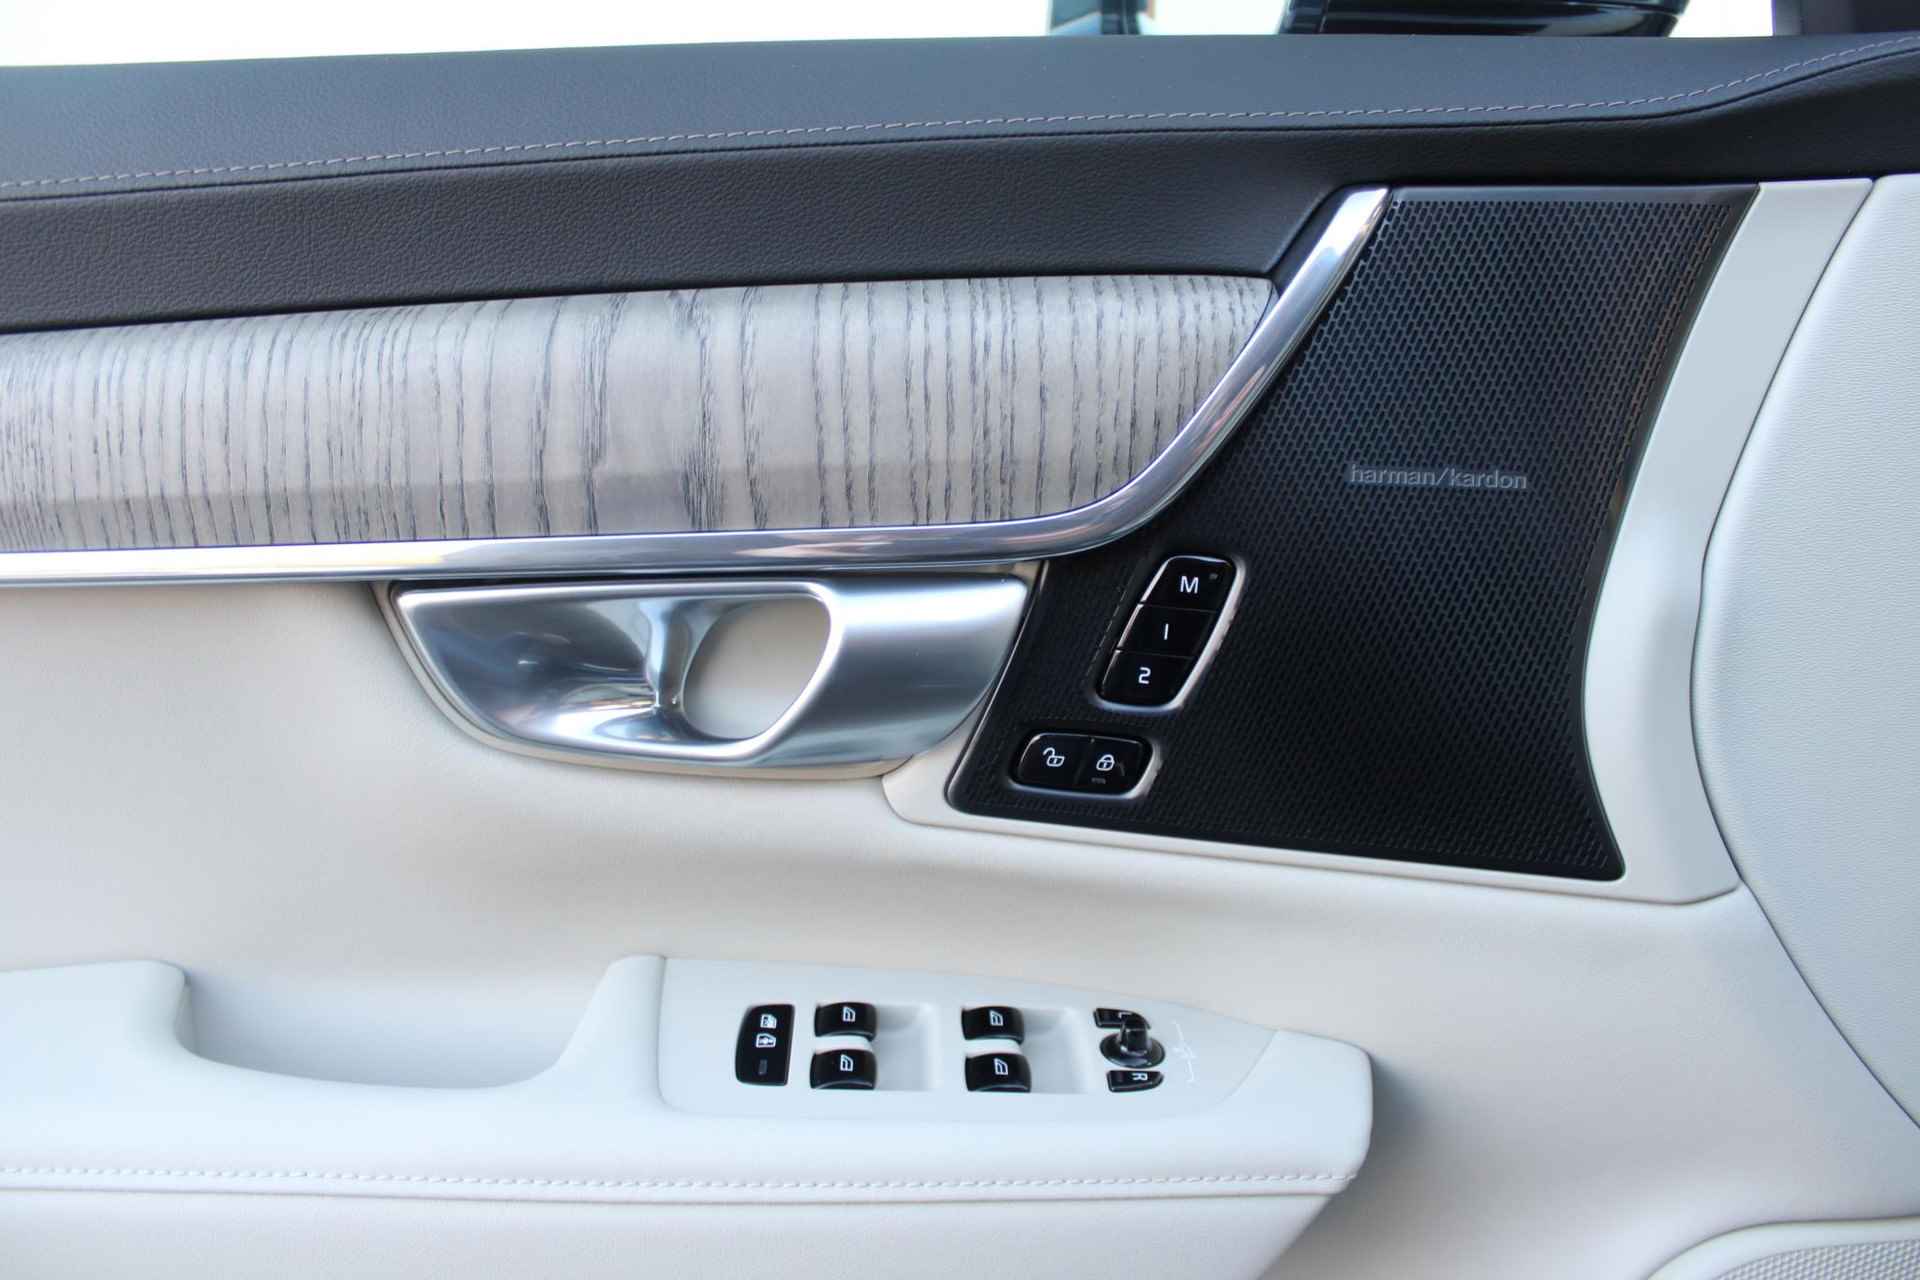 Volvo V90 AUT8 350PK T6 Recharge AWD Plus Bright, Adaptieve Cruise Control met Pilot Assist, Luchtvering, Elektrisch bedienbaar panoramisch schuif-/kanteldak, Premium audio by Harman Kardon, Elektrische voorstoelen met ventilatie, Verwarmbare voorstoelen + stuurwiel,  Park Assist voor + achter, 360 Parkeercamera, Alarmklasse III, Blind Spot Information System, Keyless Entry, Apple CarPlay, 20'' Lichtmetalen wielen - 29/50